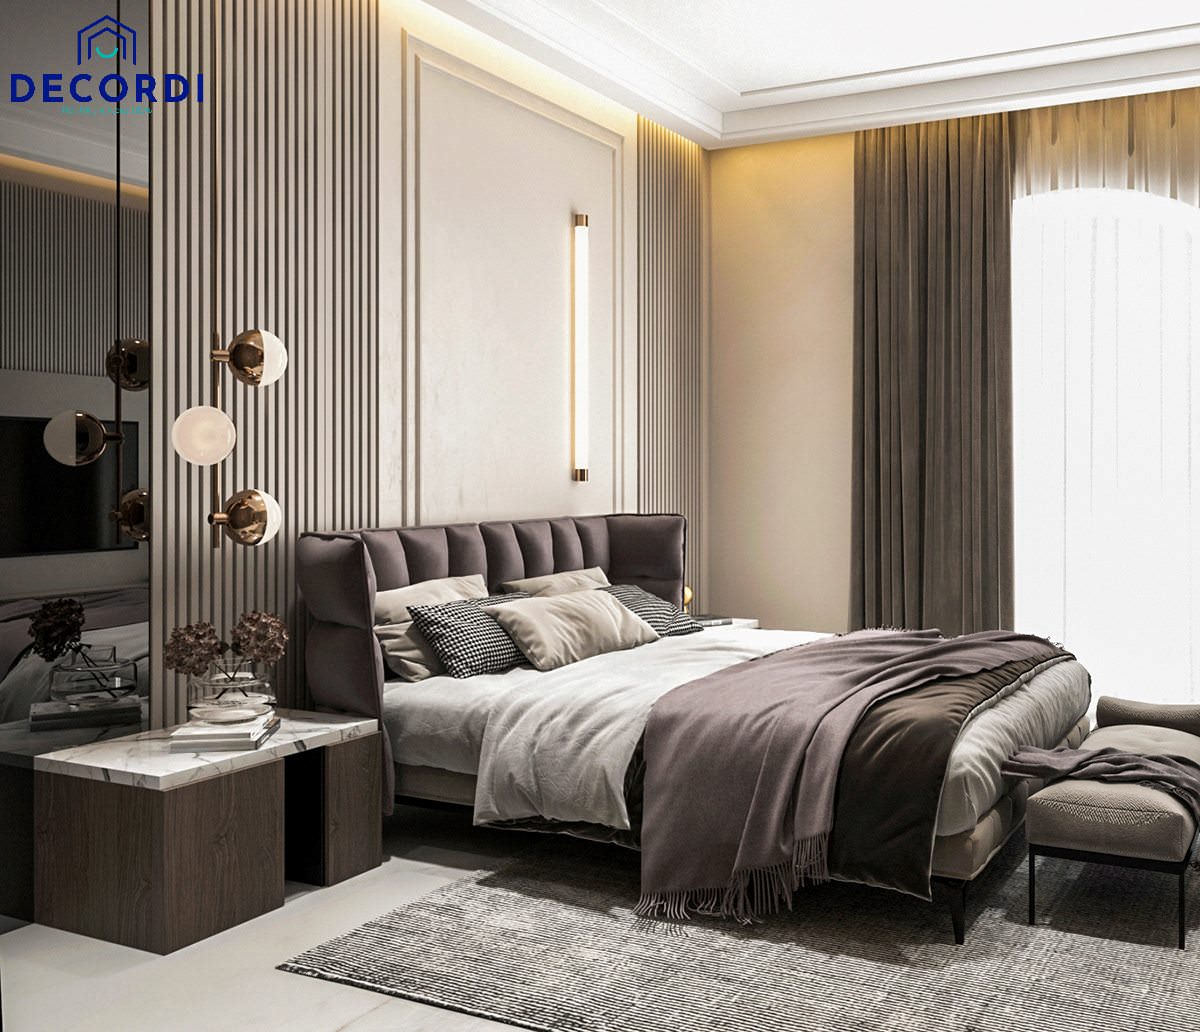 Phòng ngủ master cho căn hộ chung cư 100m2 mang phong cách hiện đại, mang nhứng món đồ decor sang trọng